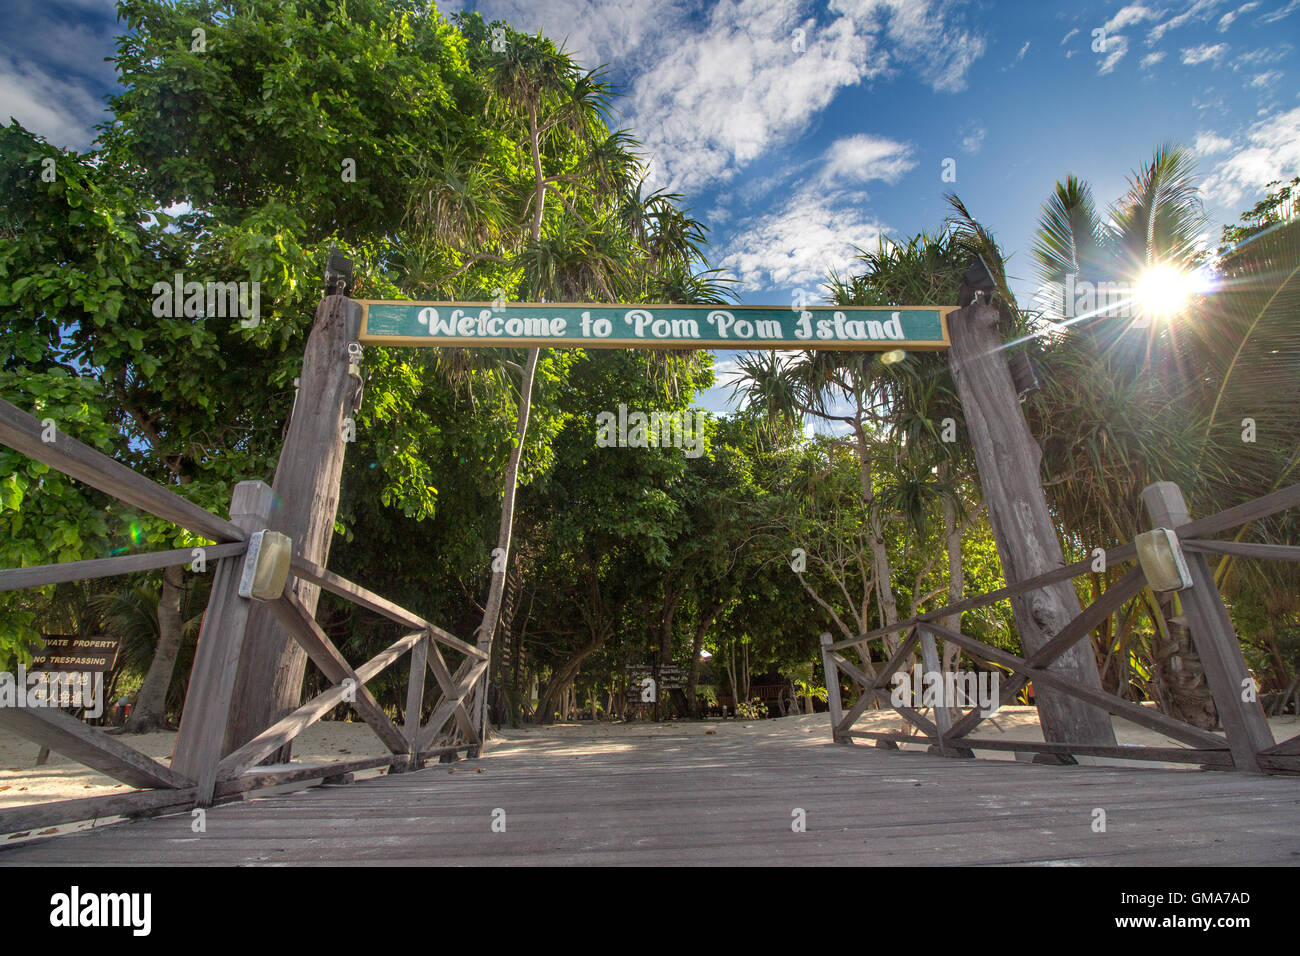 Pulau Pom Pom Resolution Stock and Images - Alamy